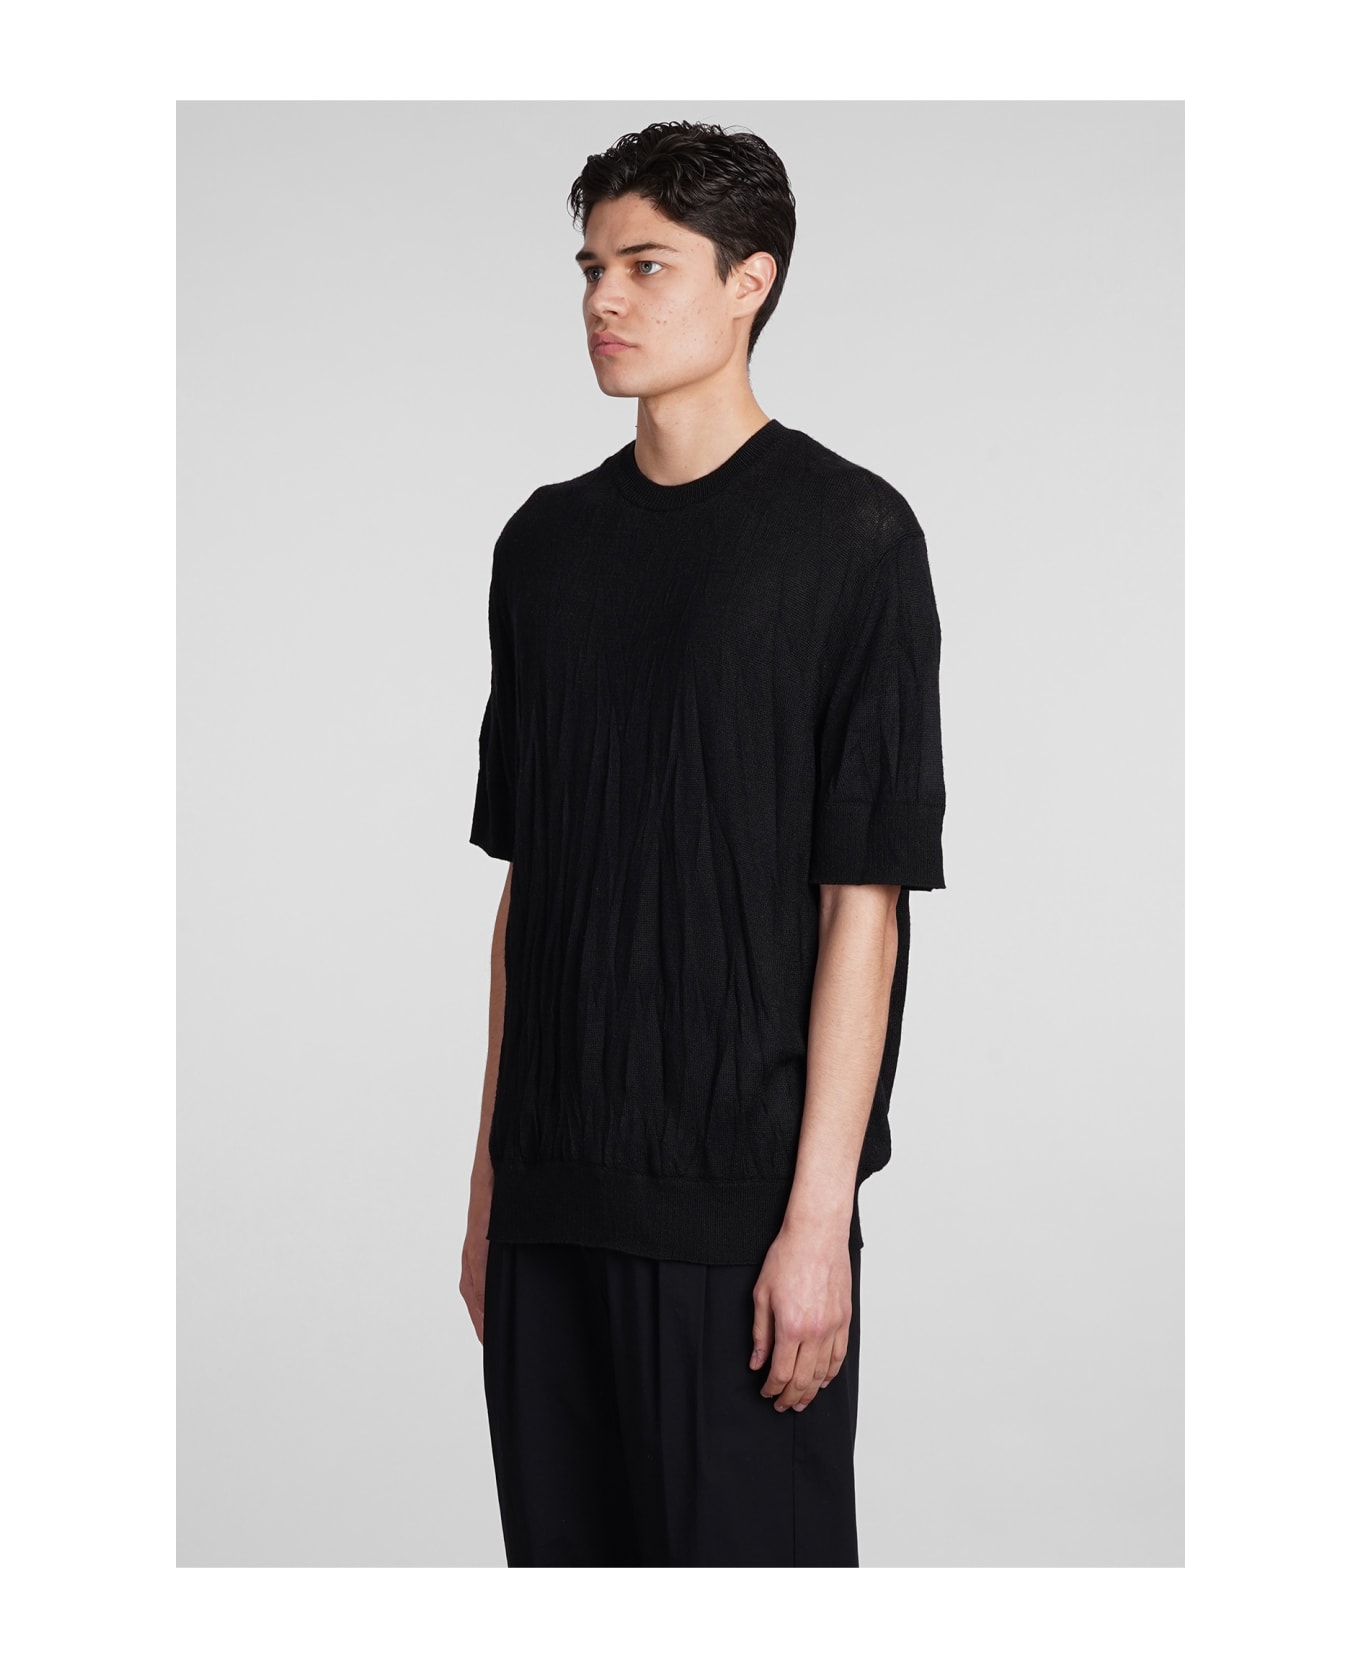 Helmut Lang Knitwear In Black Wool - black シャツ